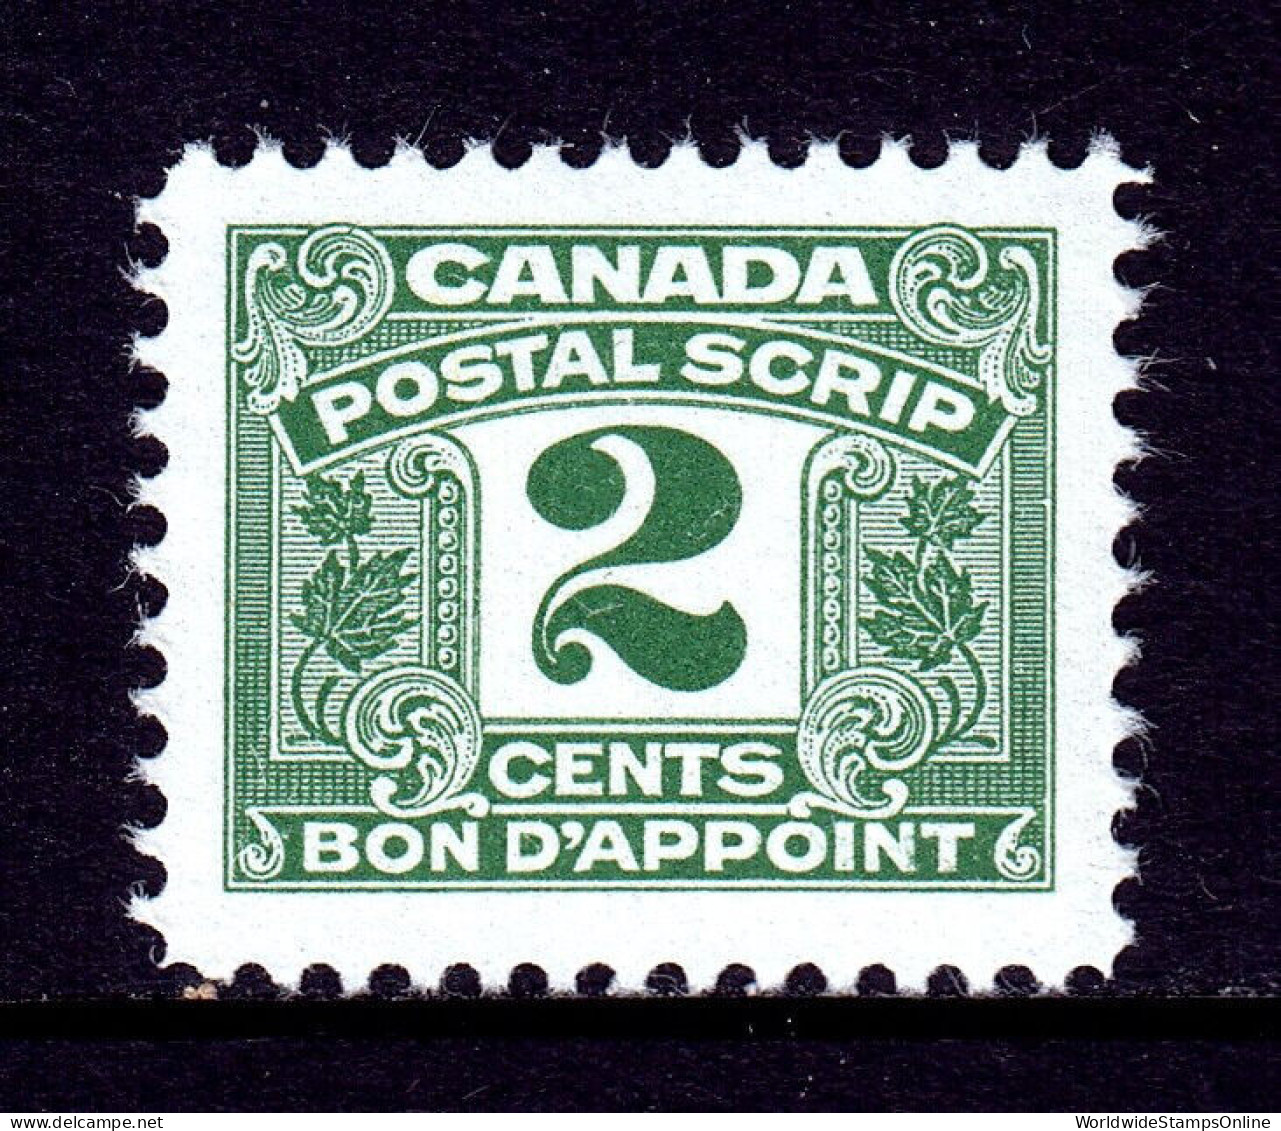 CANADA — VAN DAM FPS42 — 2¢ THIRD ISSUE POSTAL SCRIPT — MNH — CV $31 - Fiscale Zegels